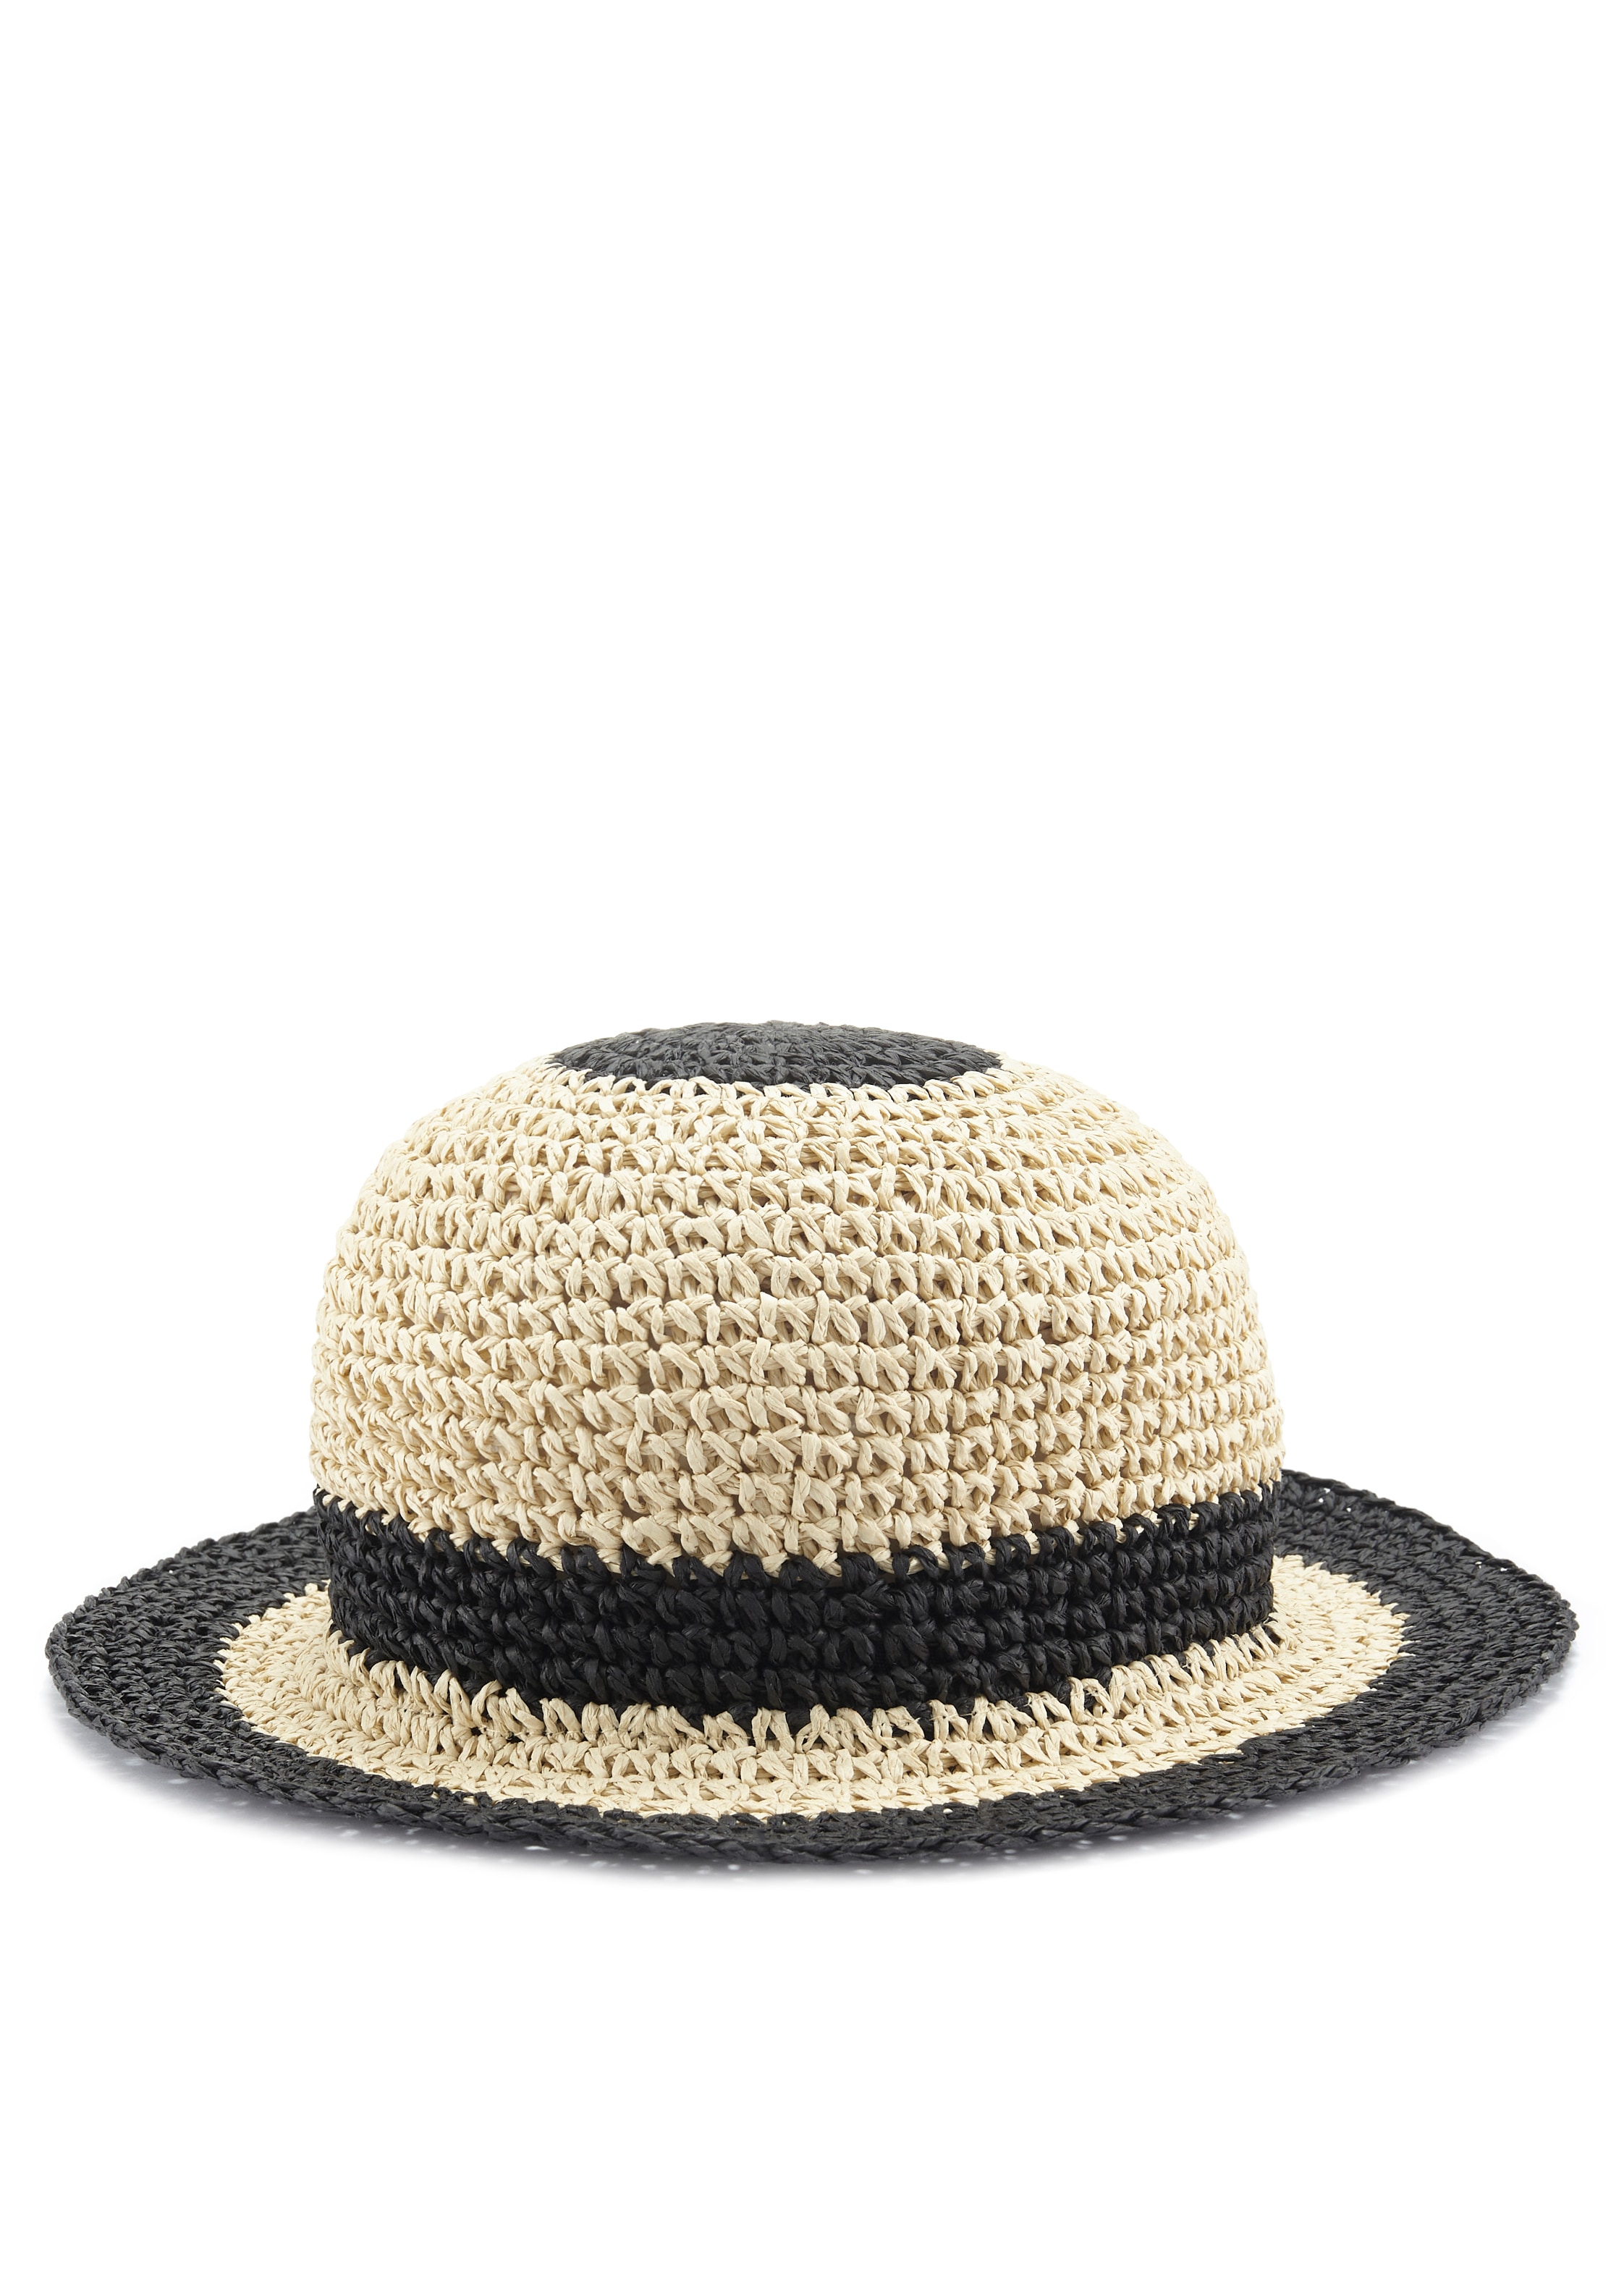 Strohhut, Bucket Hat aus Stroh, Sommerhut, Kopfbedeckung VEGAN